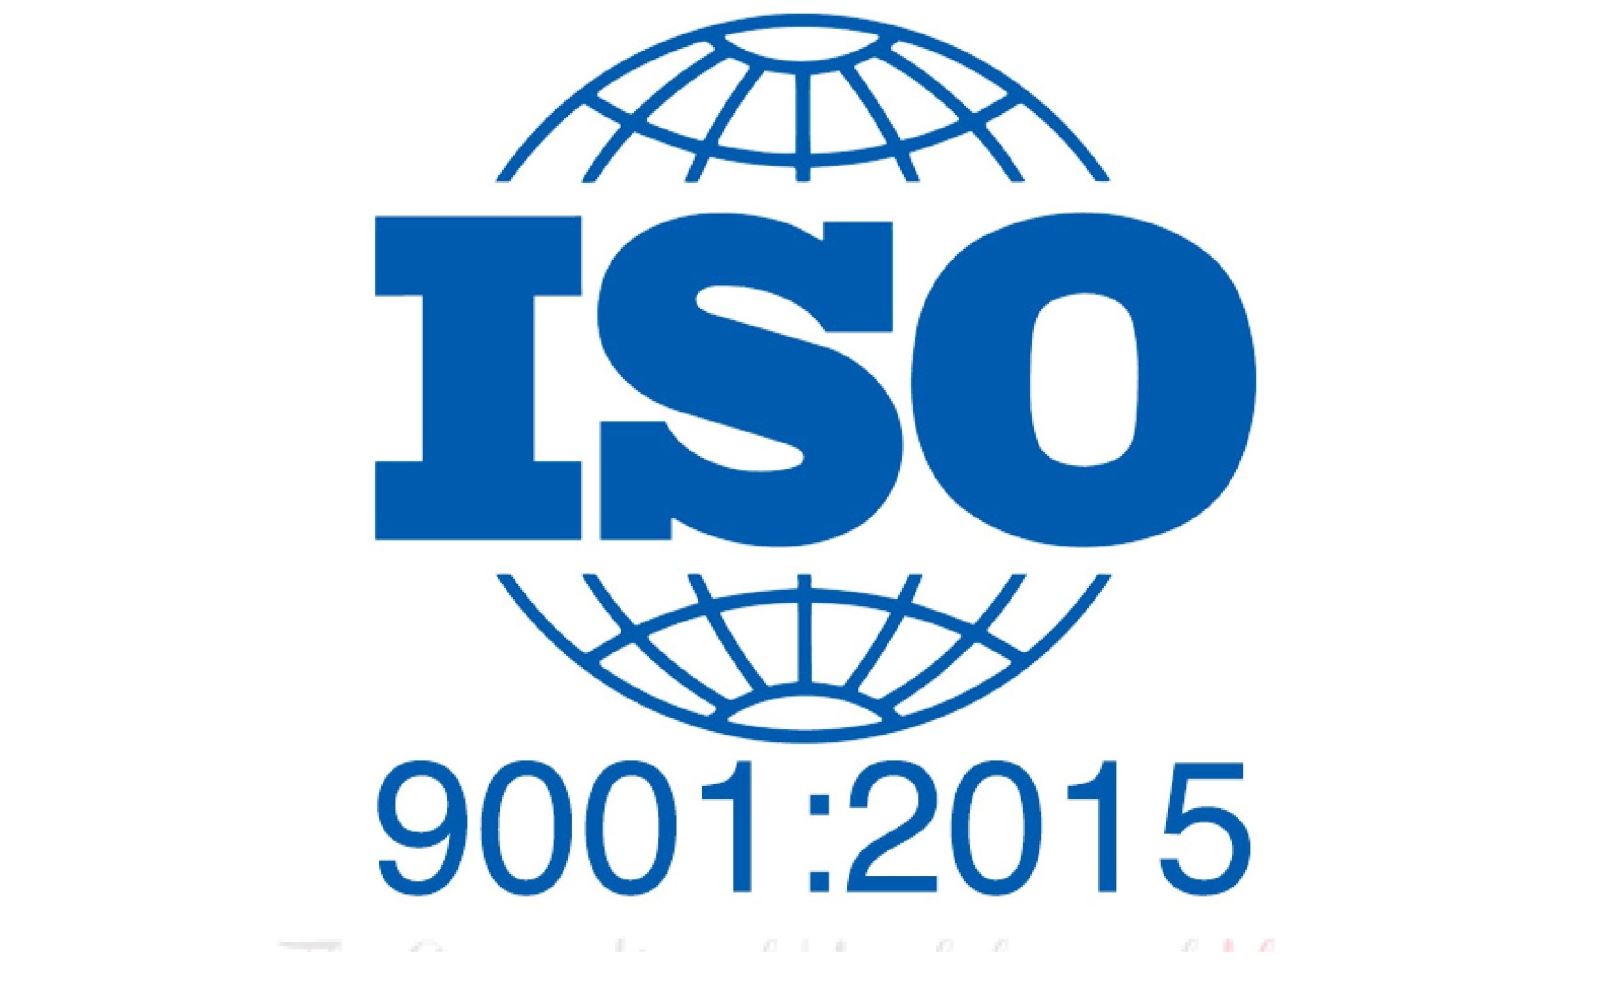 Quy trình quản lý chất lượng theo tiêu chuẩn ISO của Trường Đại học Vinh